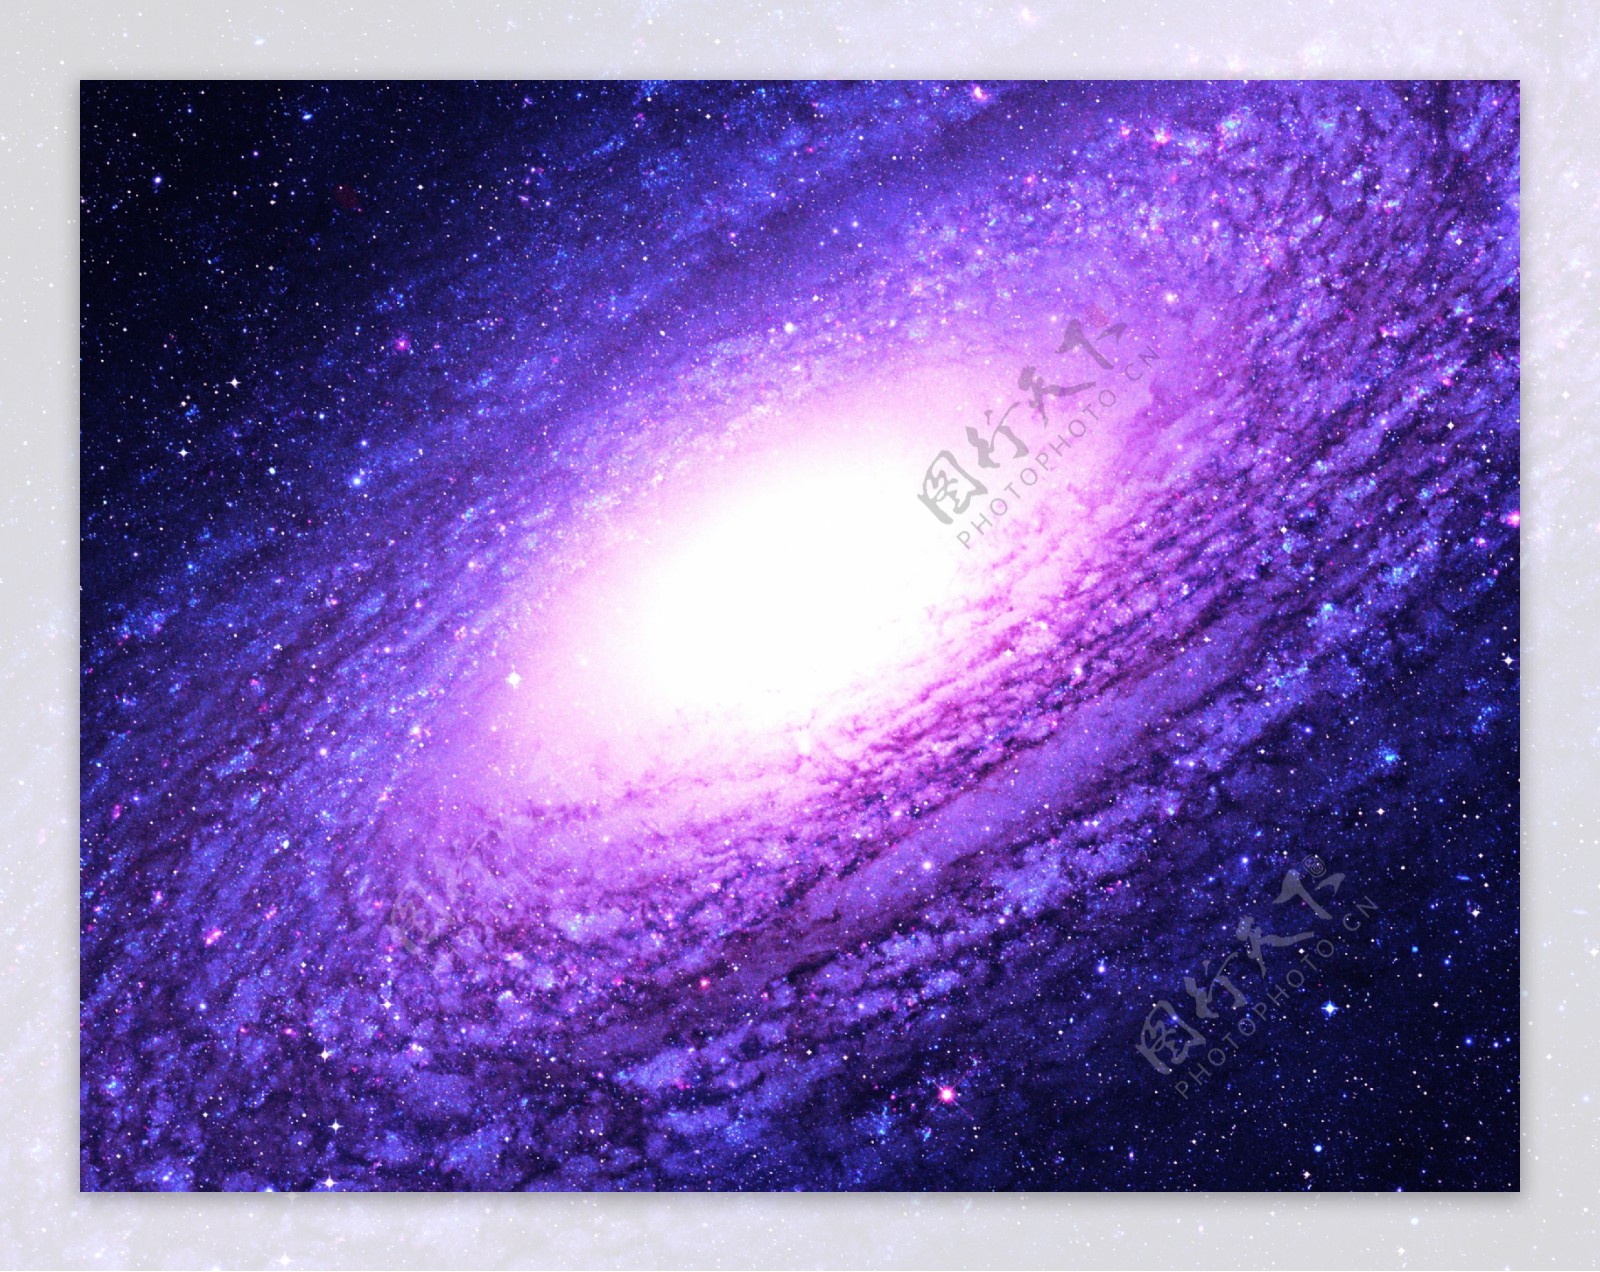 闪亮星空银河系图片